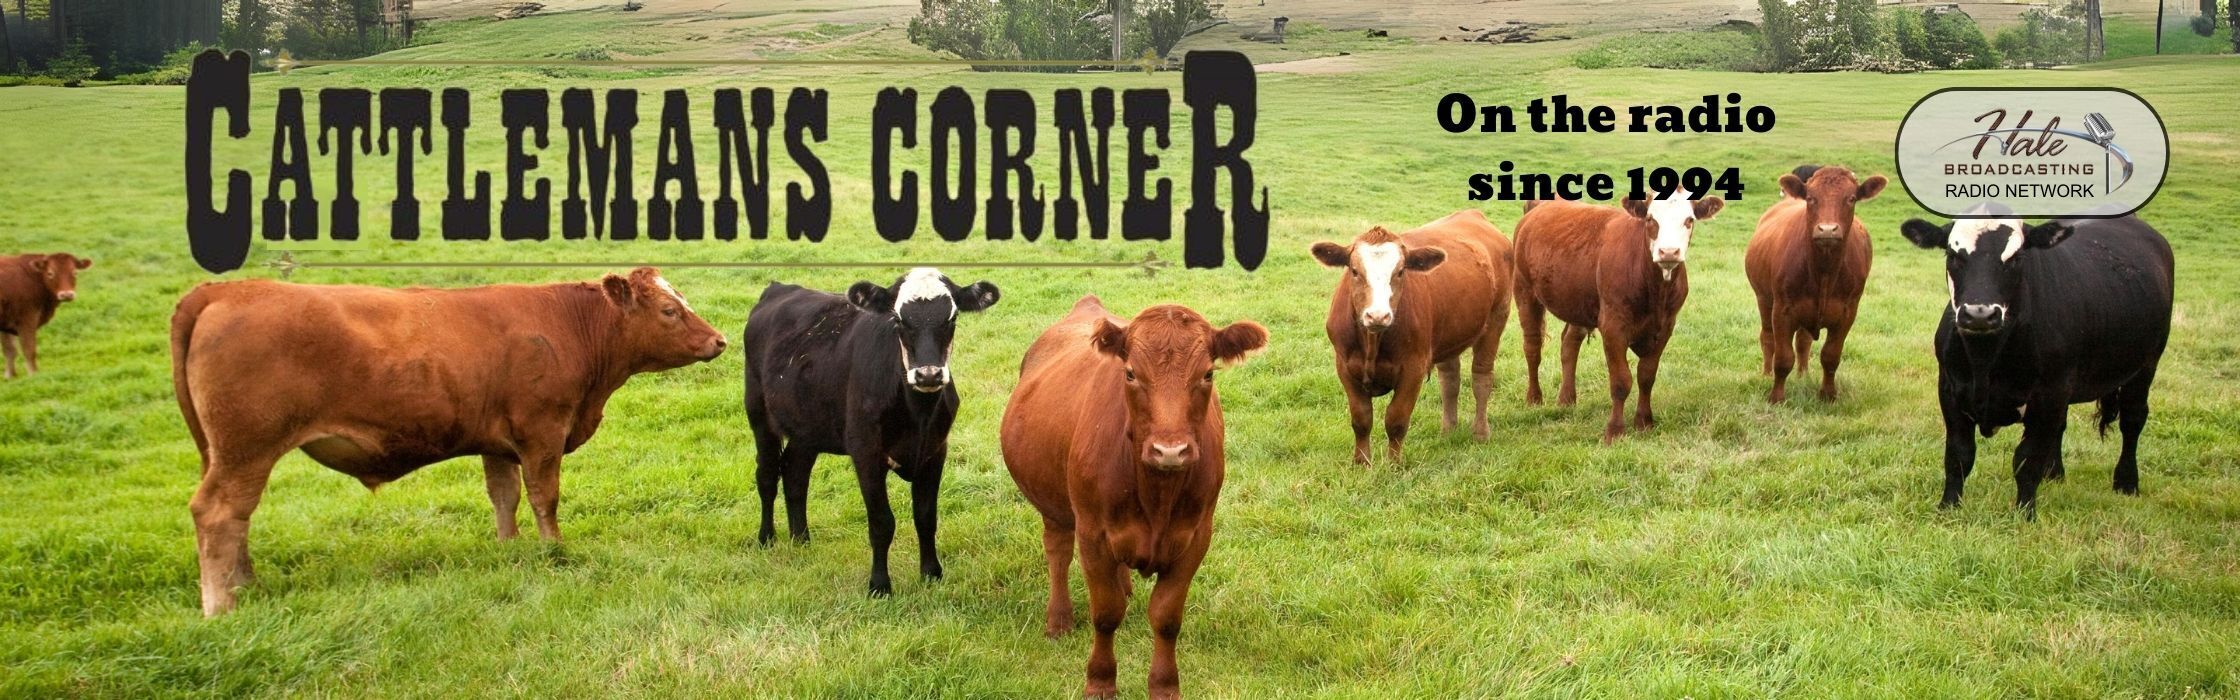 Cattleman’s Corner Radio